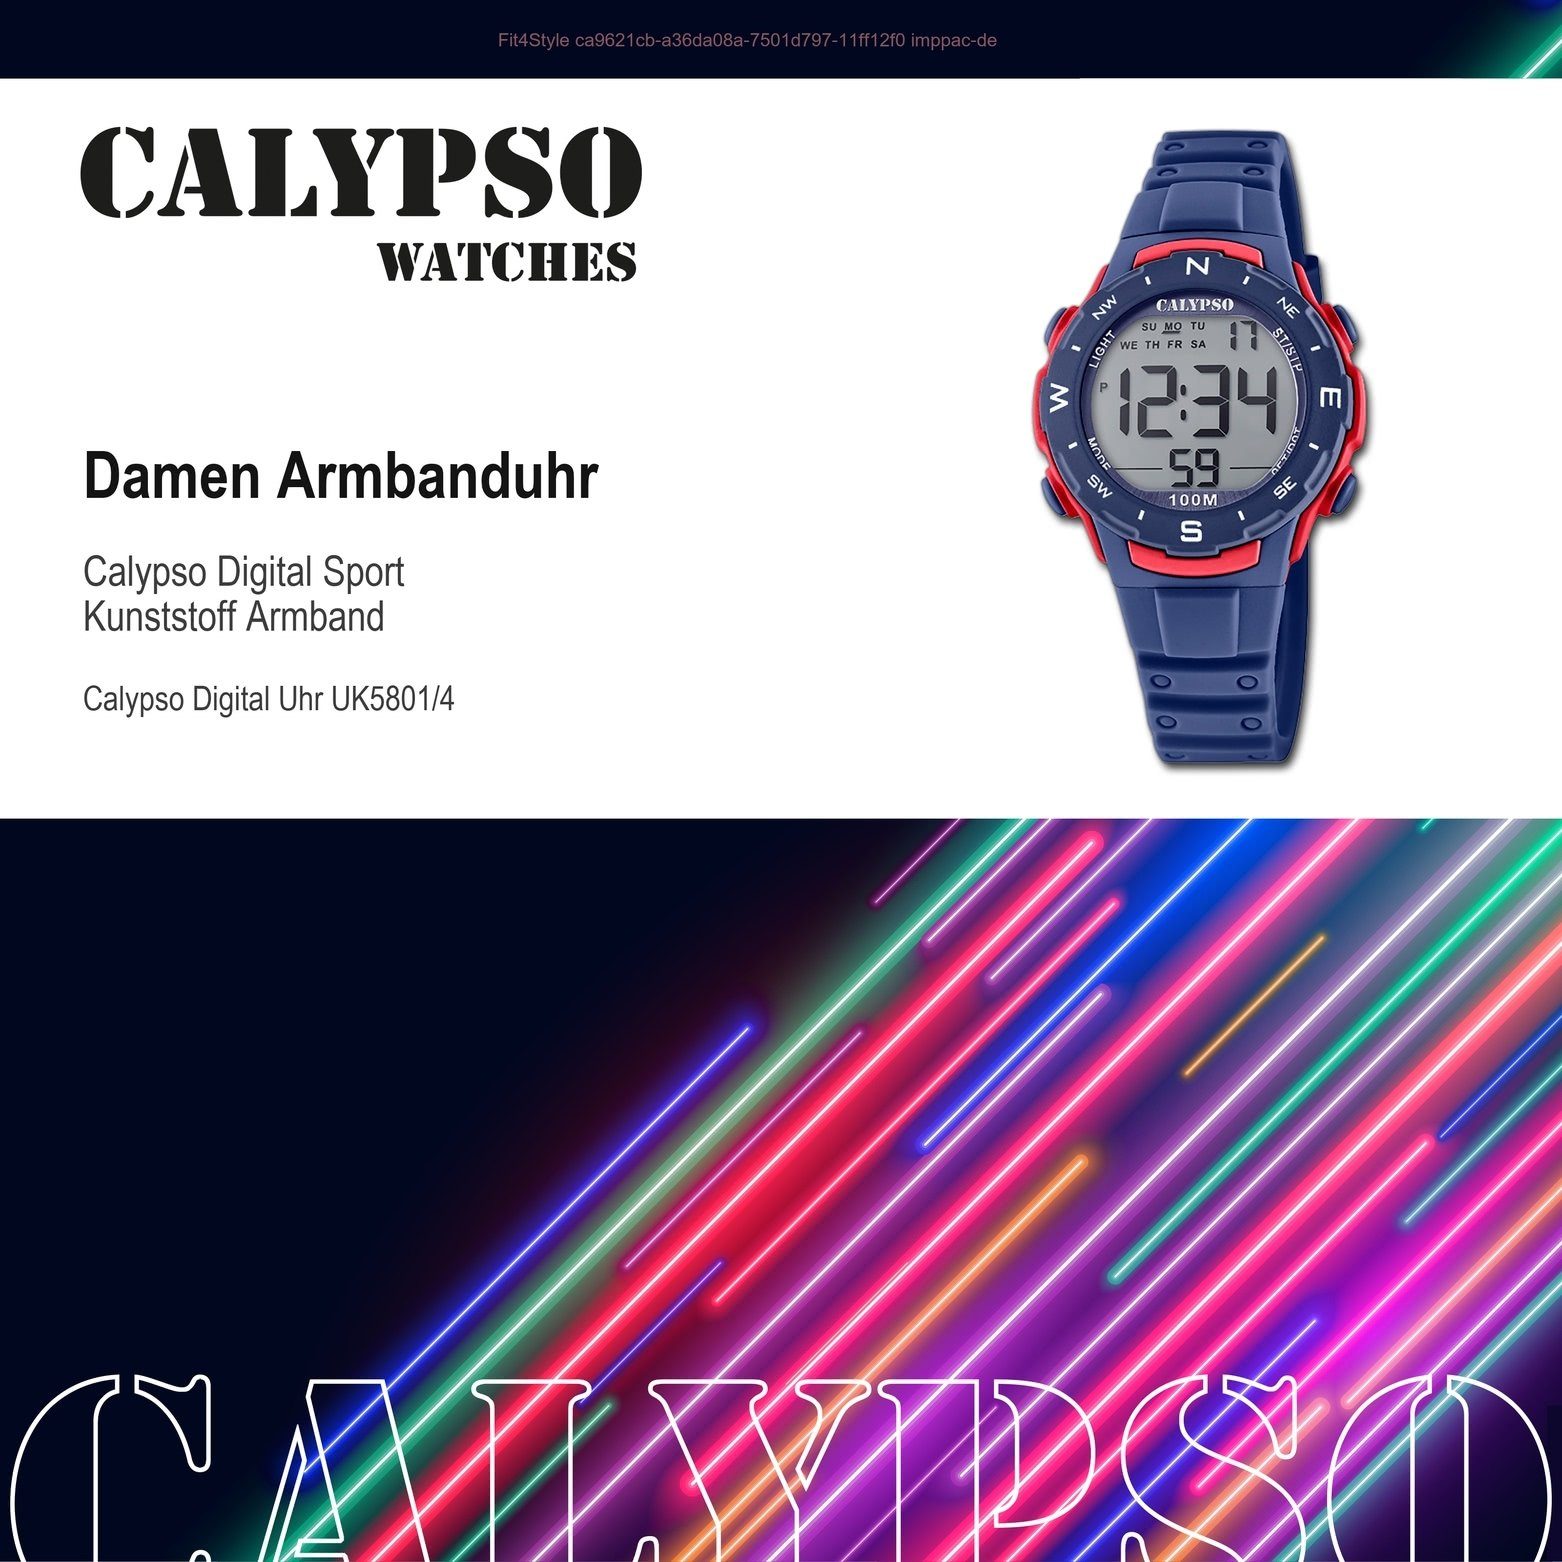 Unisex K5801/4, Uhr Digital 35mm) Sport-Style Kunststoffband, Damen, (ca. Calypso WATCHES Herrenuhr Digitaluhr CALYPSO mittel rund,